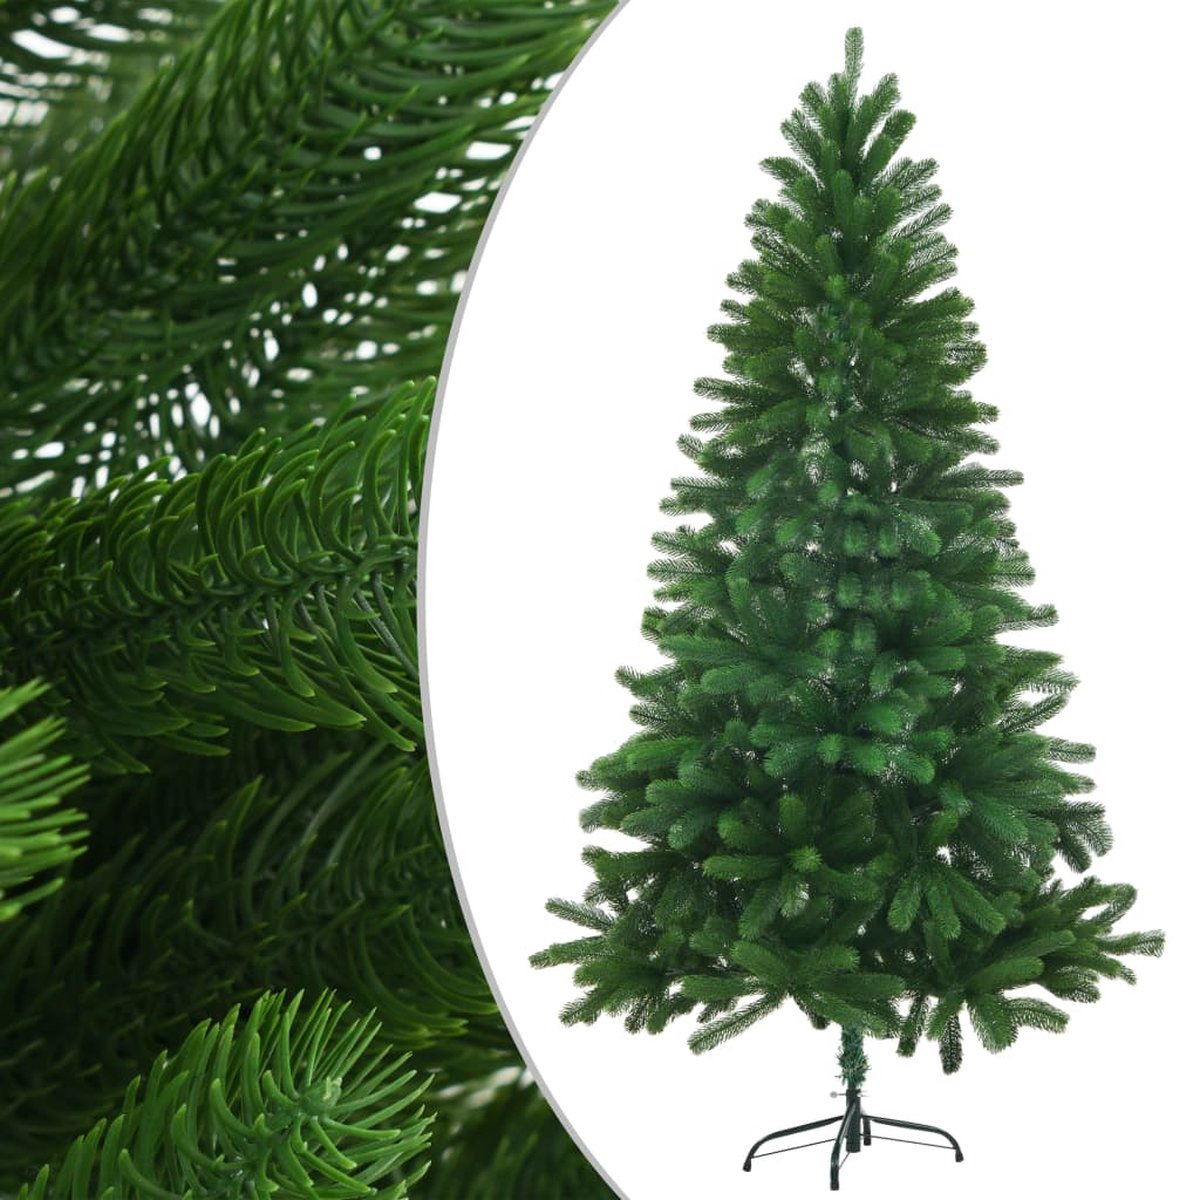 VidaLife Kunstkerstboom met levensechte naalden 150 cm groen